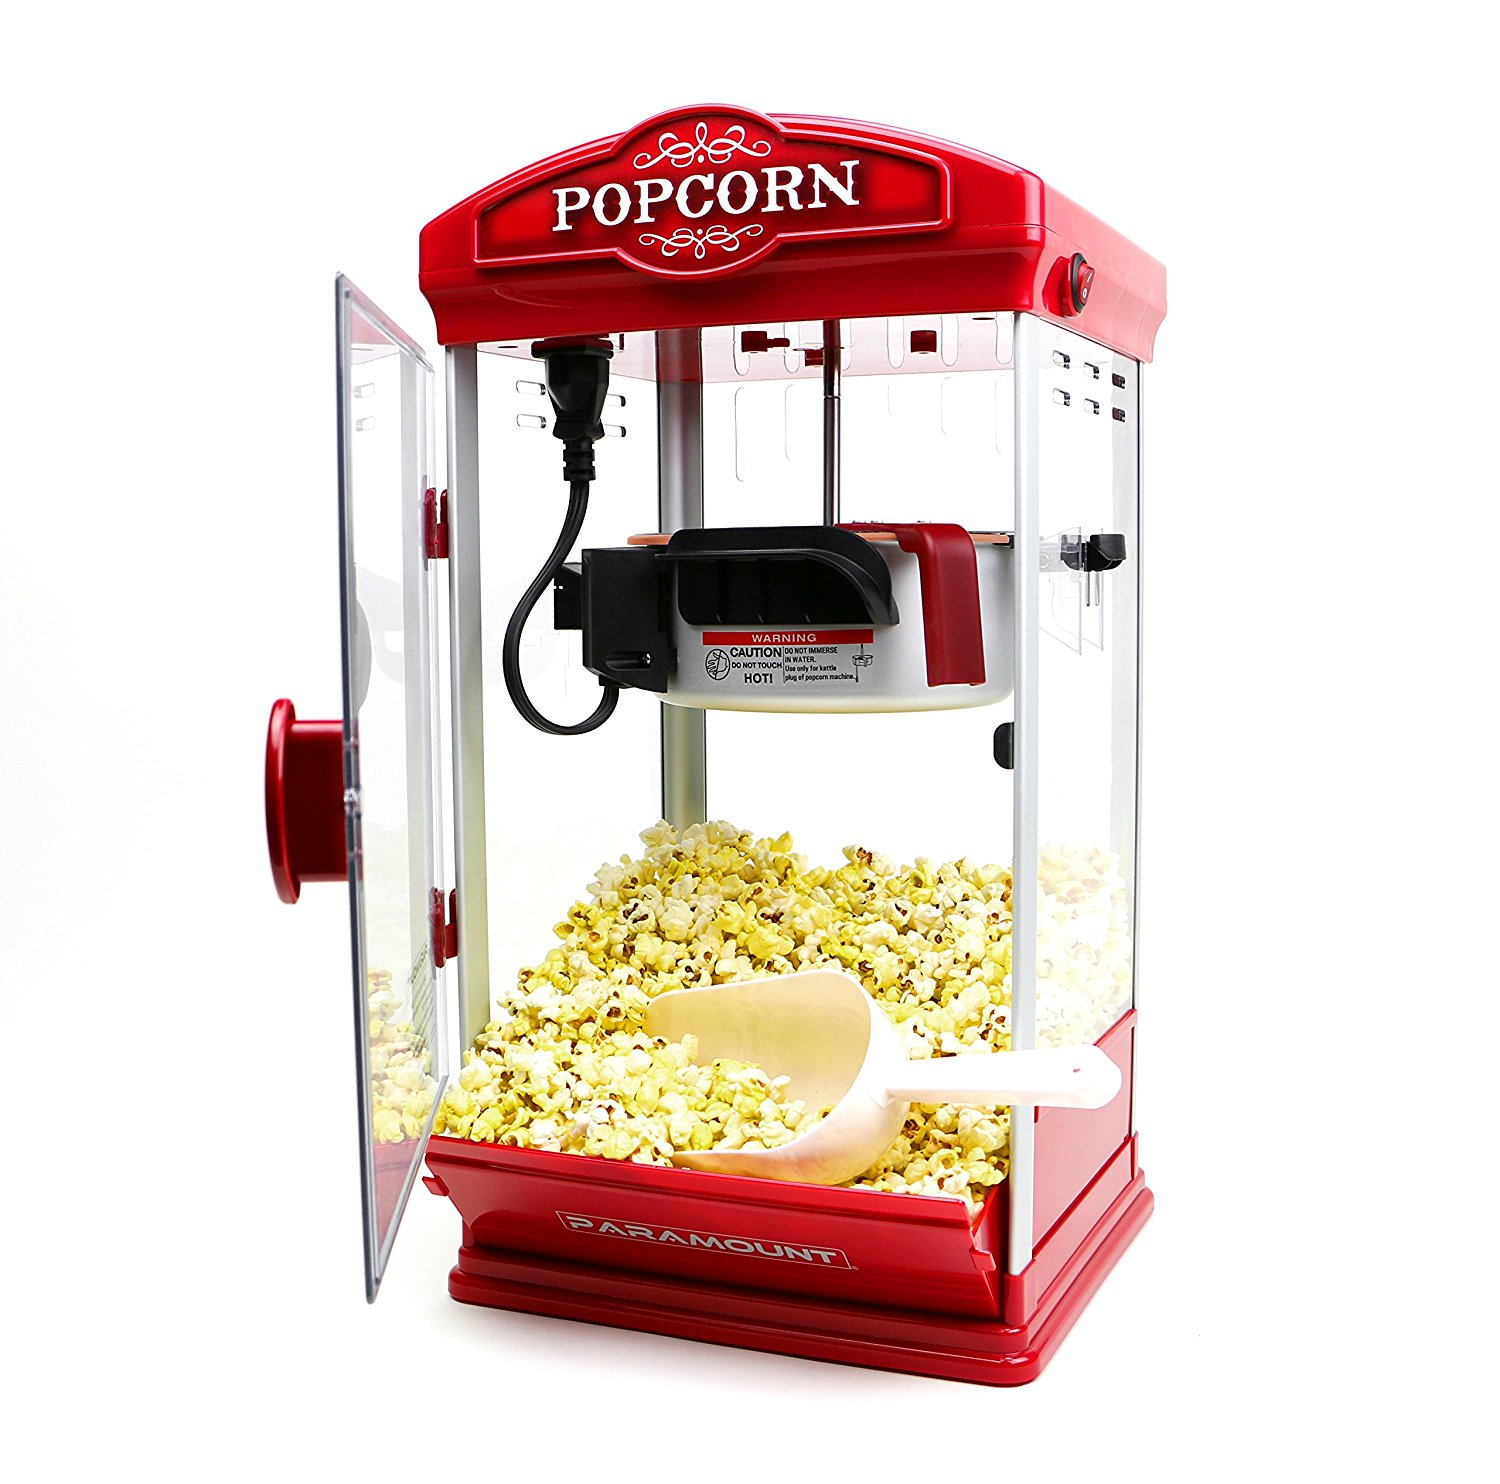 Popcorn machine photo